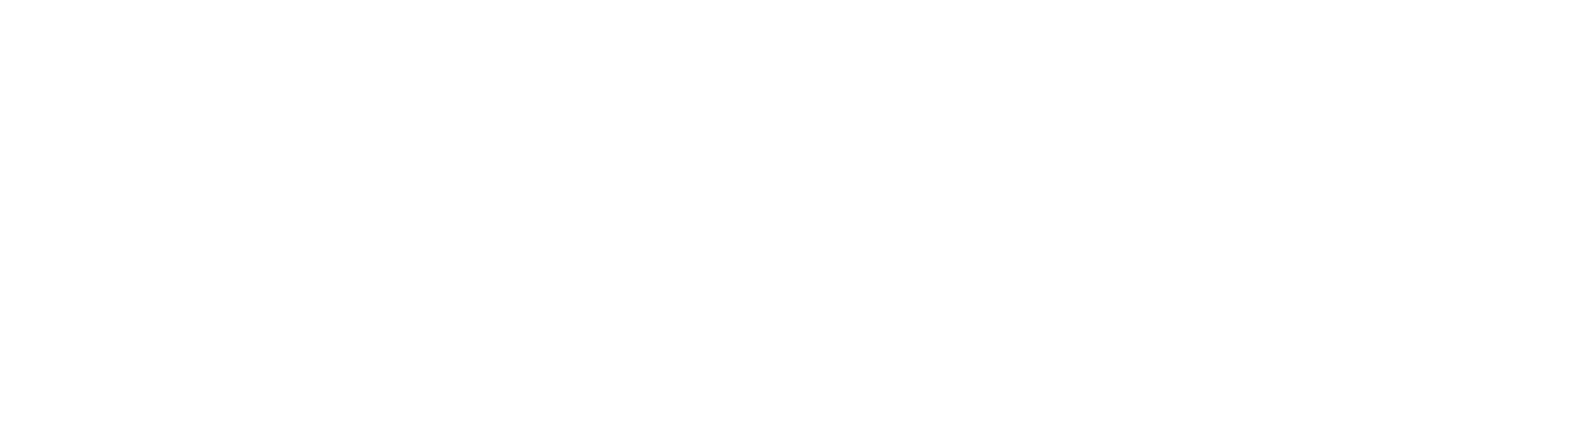 AdiosAdios® Logo Blanco